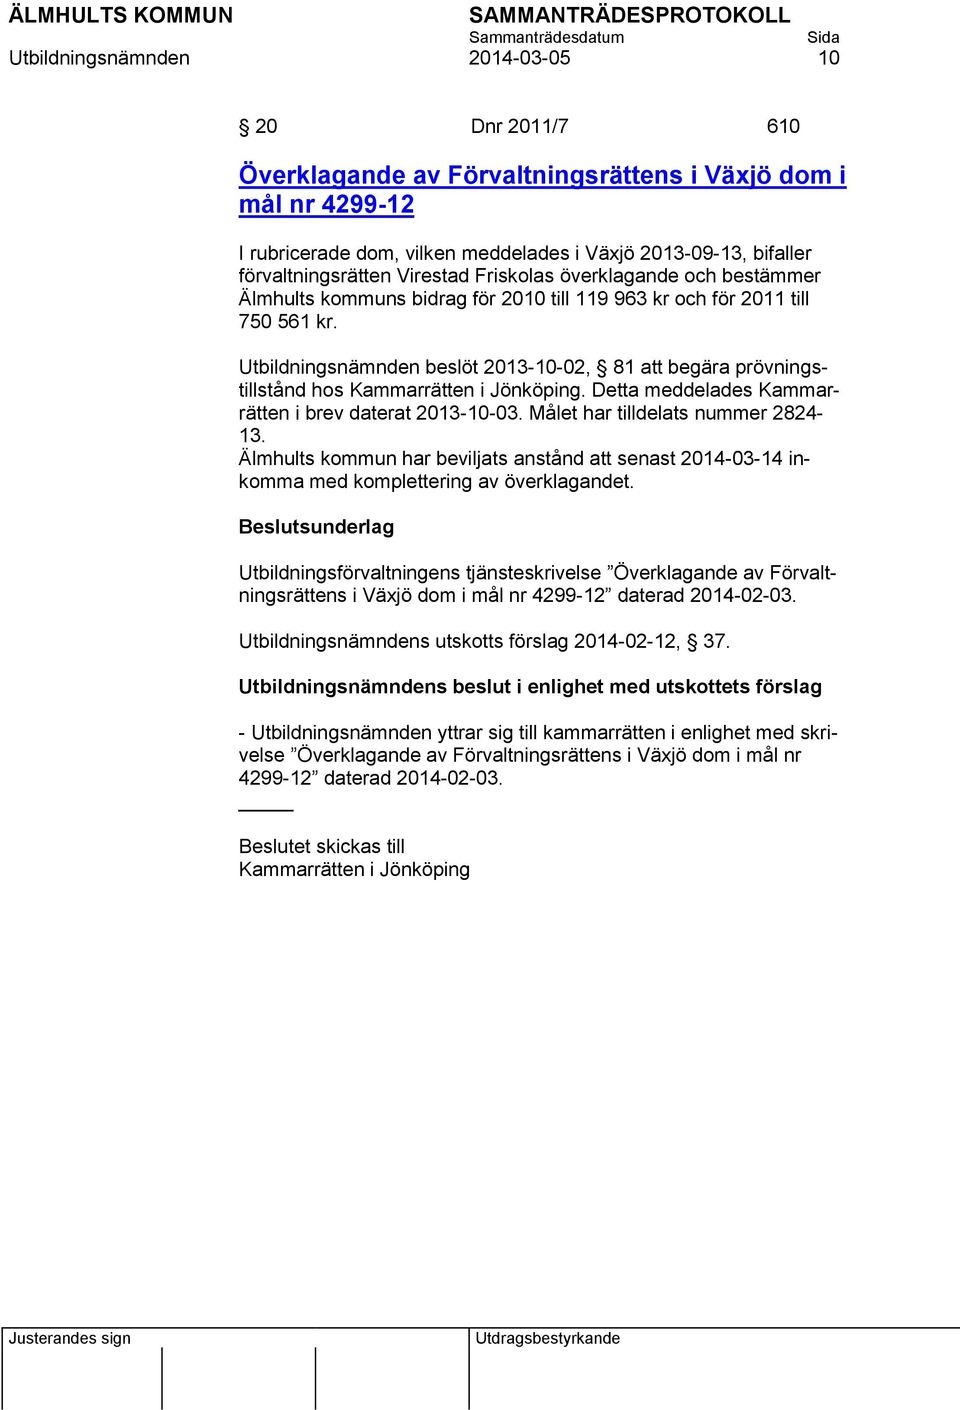 Utbildningsnämnden beslöt 2013-10-02, 81 att begära prövningstillstånd hos Kammarrätten i Jönköping. Detta meddelades Kammarrätten i brev daterat 2013-10-03. Målet har tilldelats nummer 2824-13.